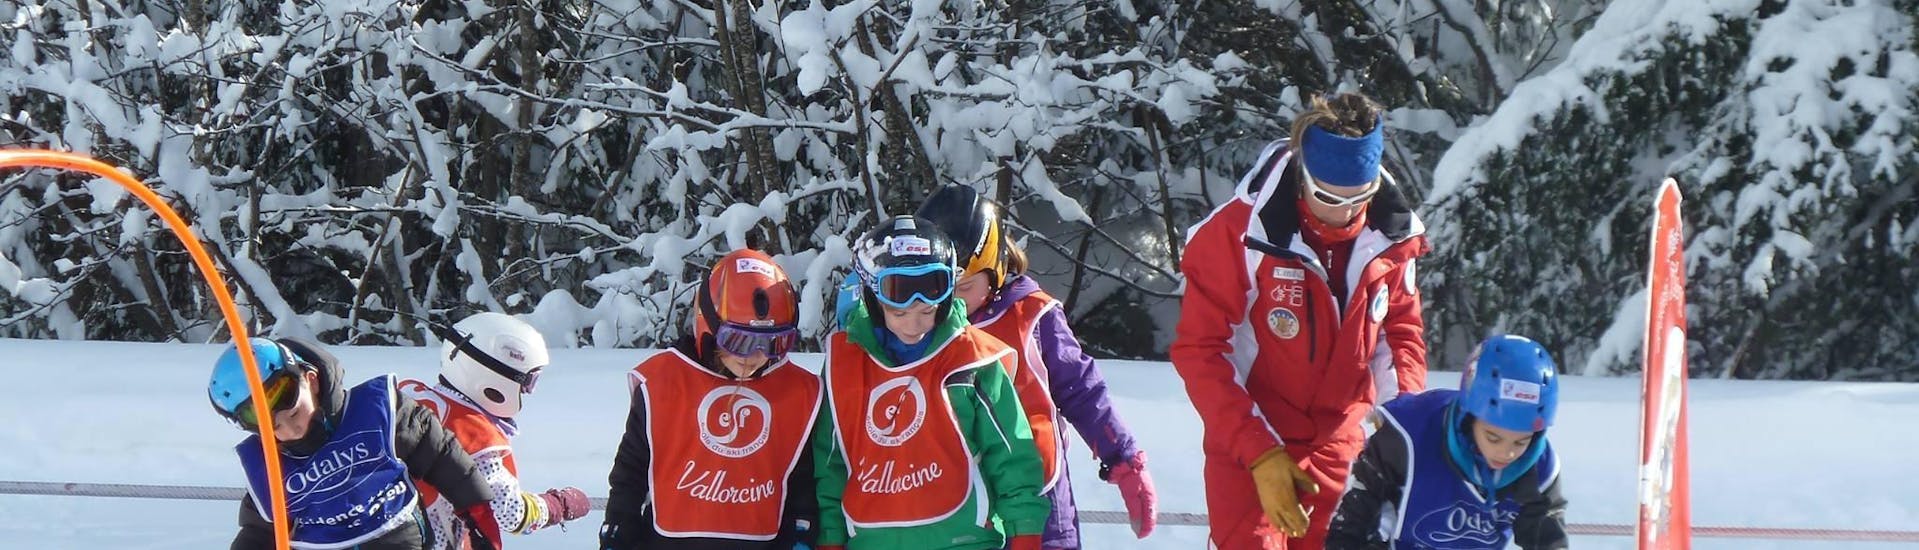 Clases de esquí para niños (3-4 años) en Vallorcine/La Poya.